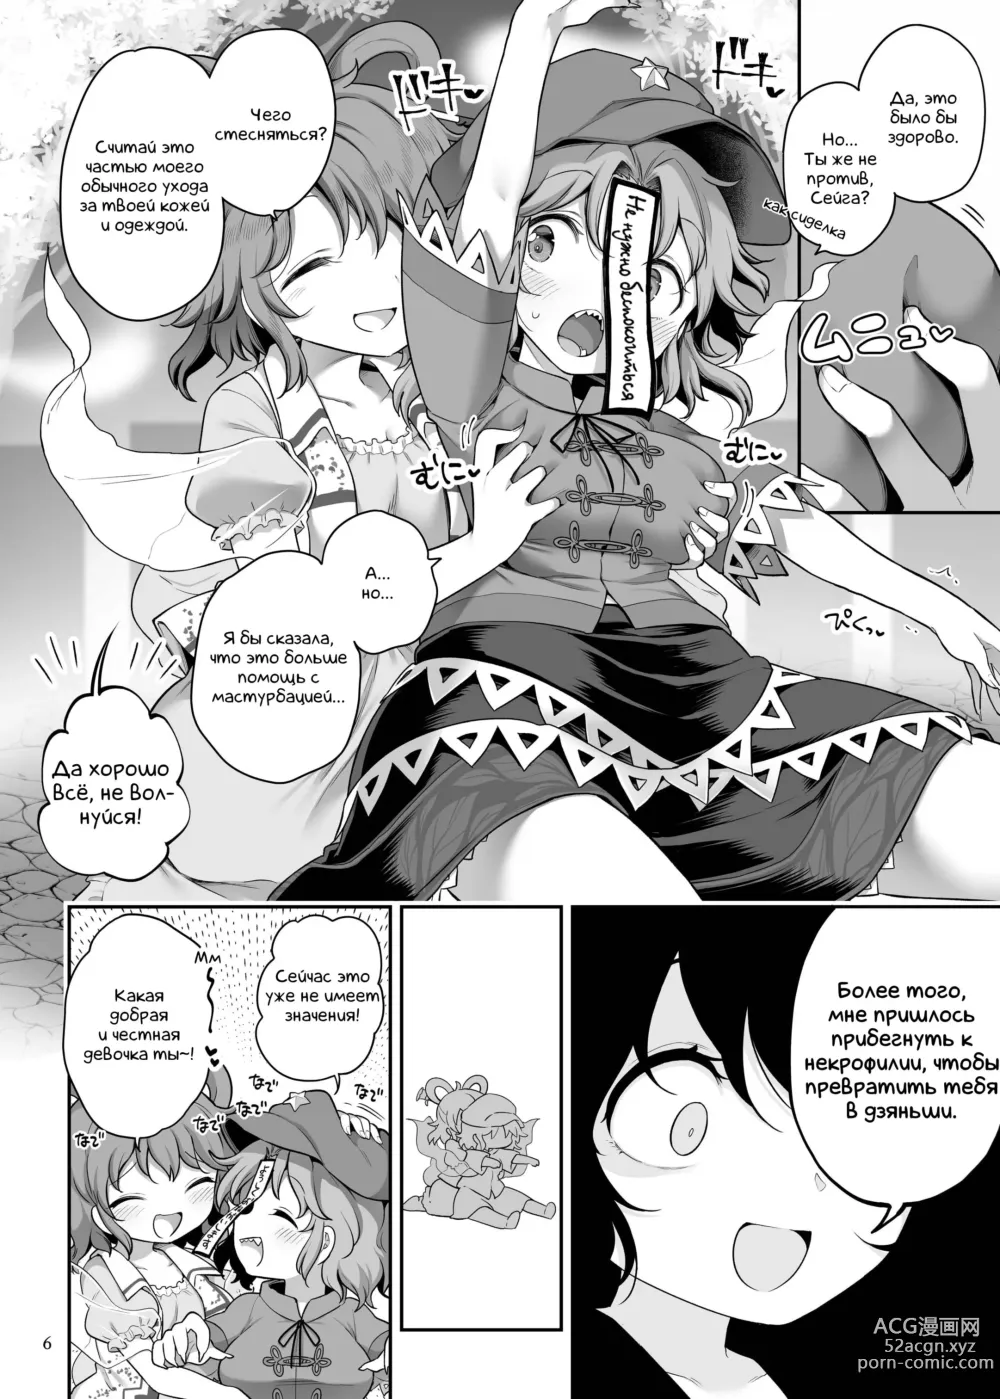 Page 6 of doujinshi Преданный сексуальному желанию труп